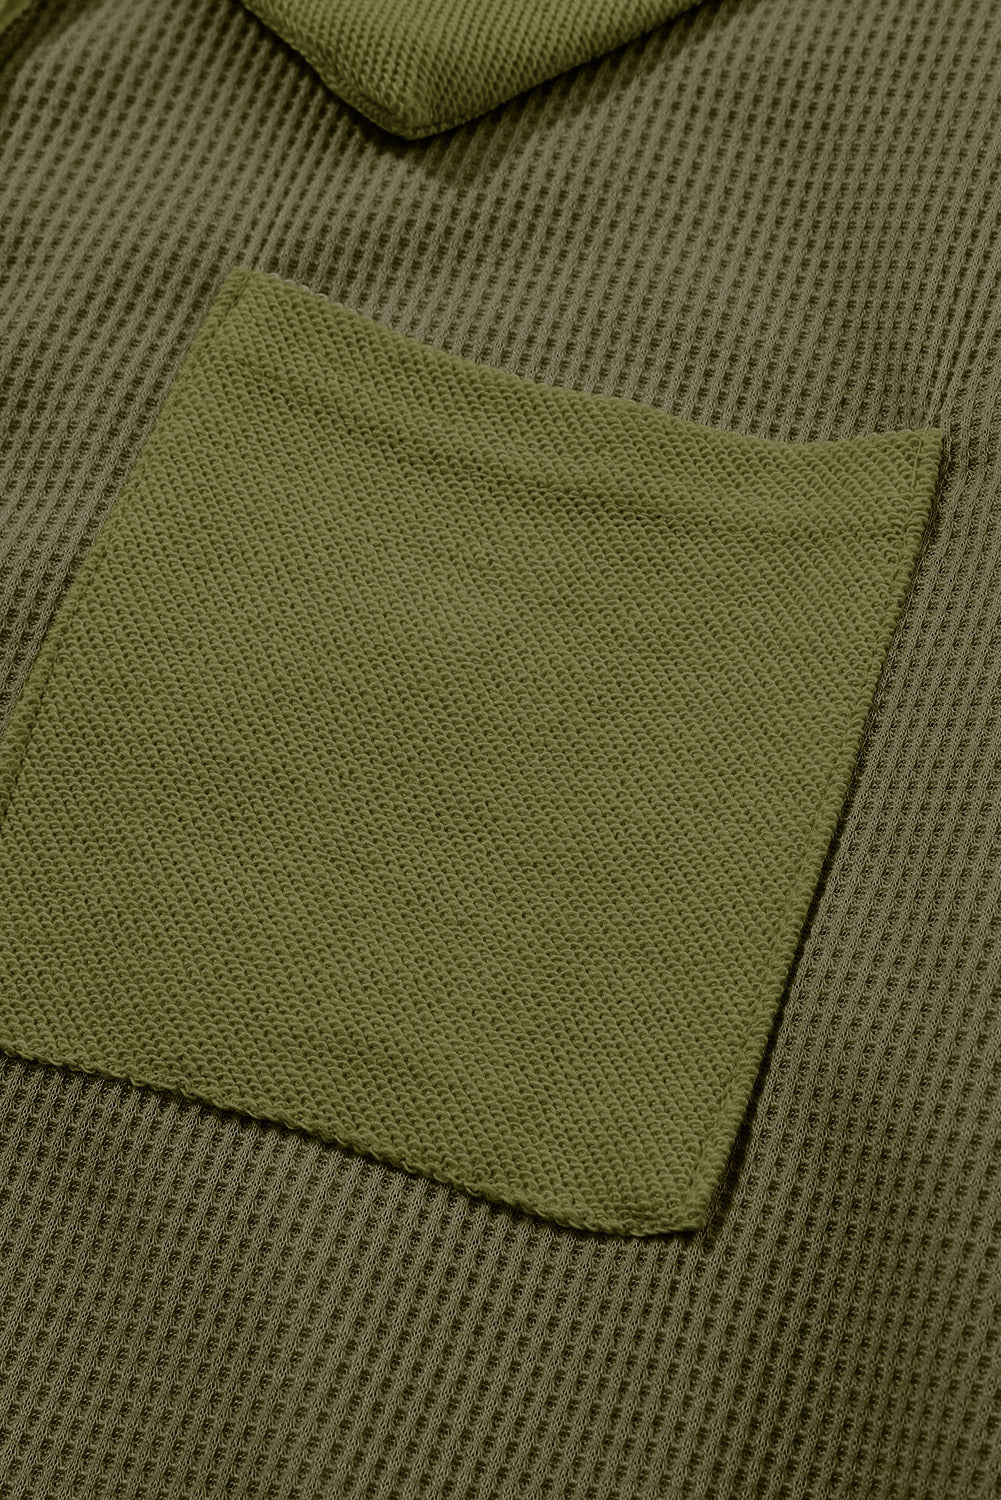 Haut boutonné à manches longues en tricot gaufré vert